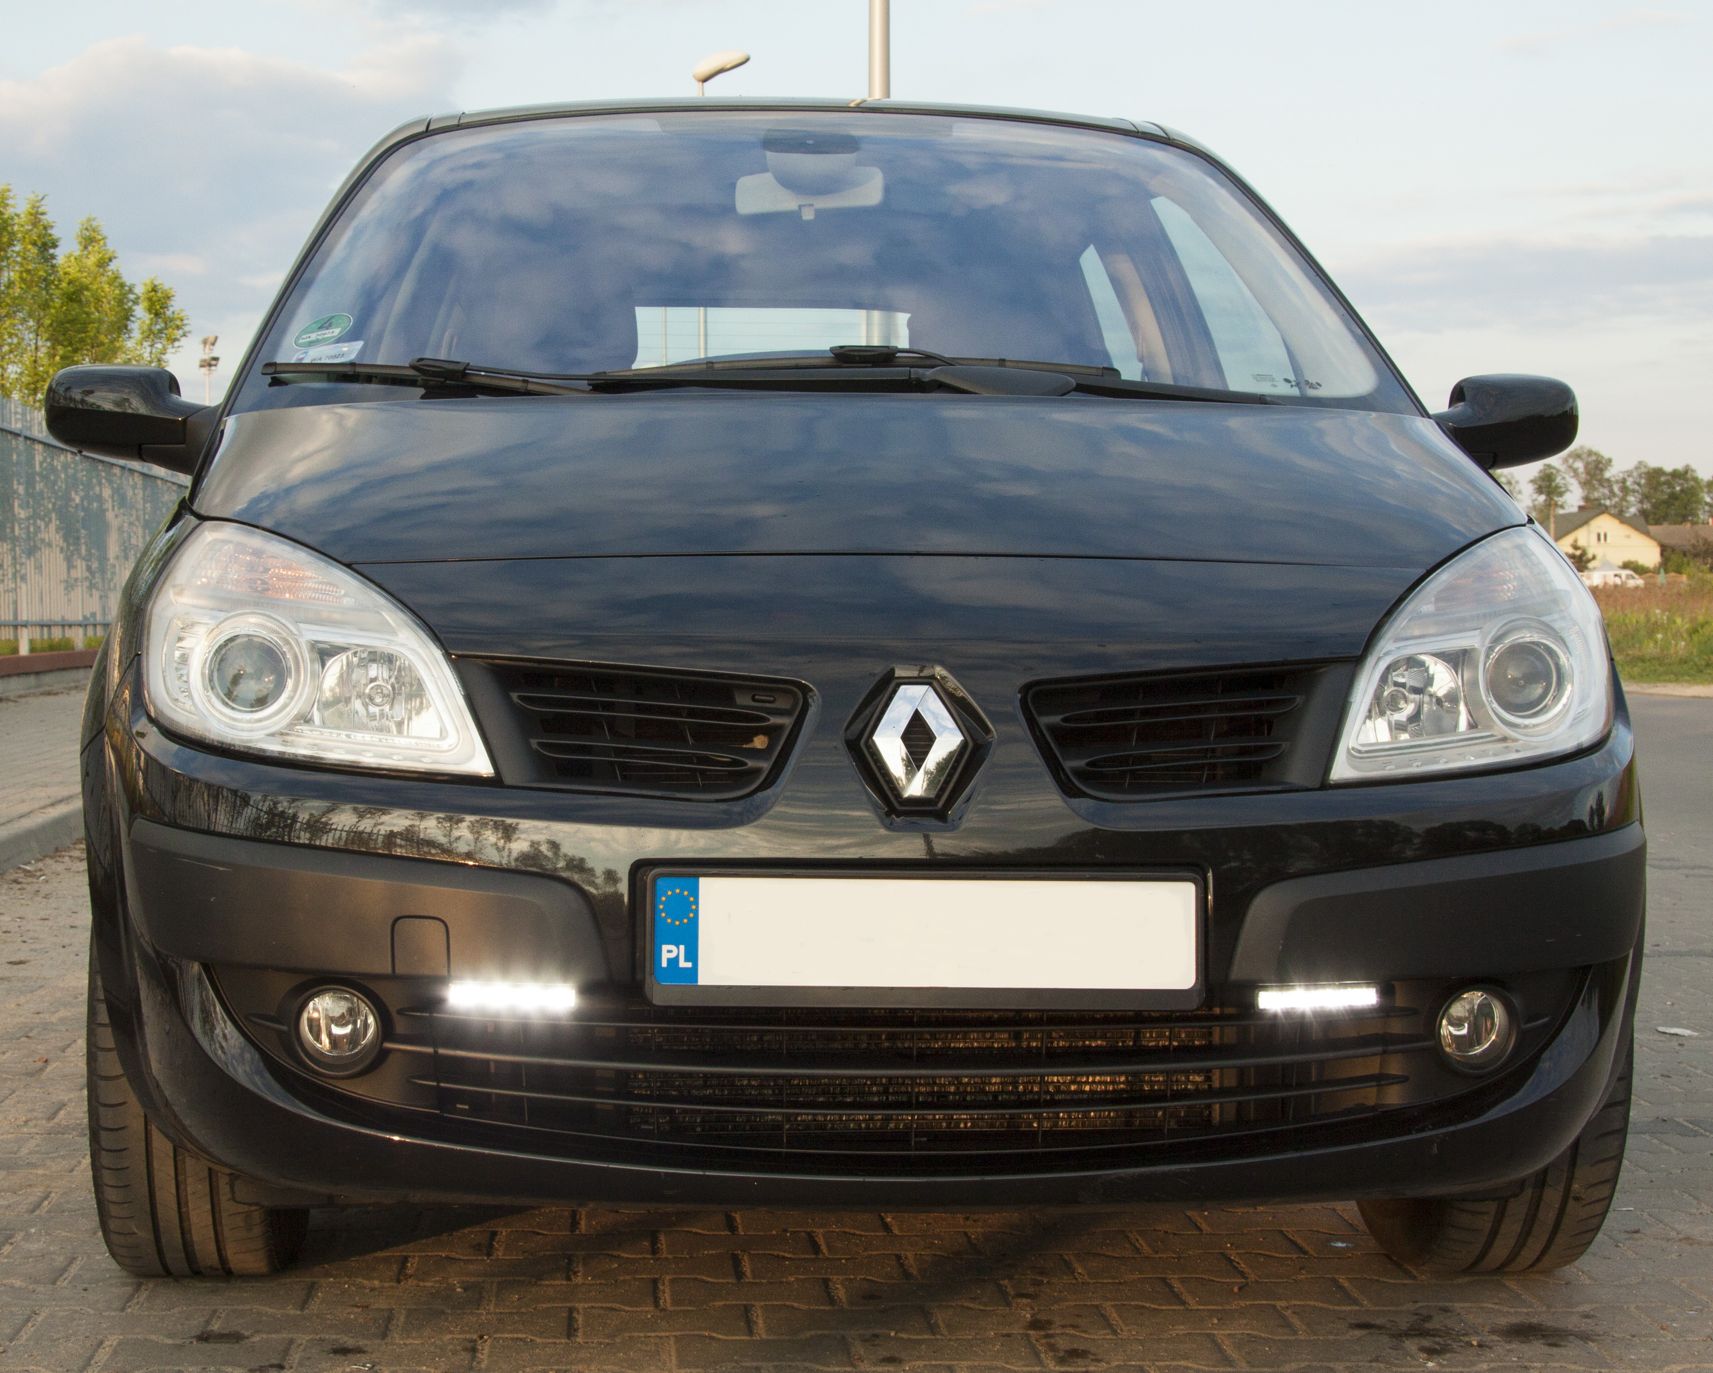 [Megane II phI] Światła do jazdy dziennej FORUM Renault